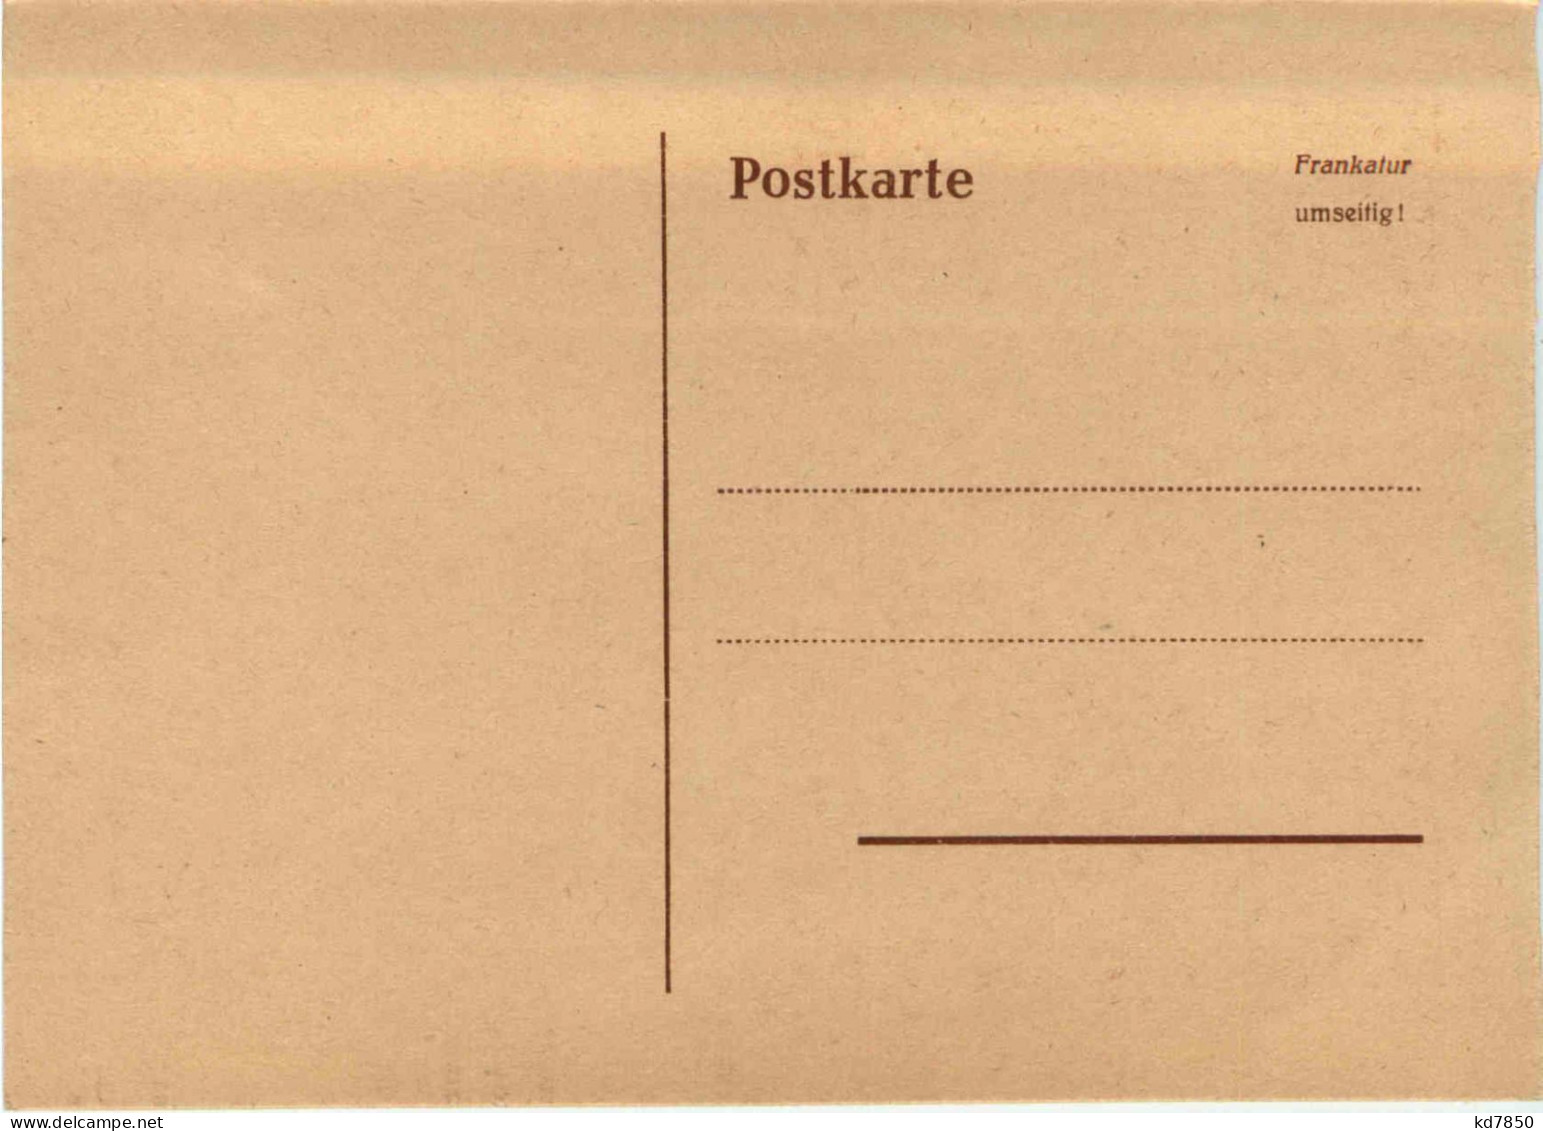 Tag Der Briefmarke 1951 - Saar - Stamps (pictures)